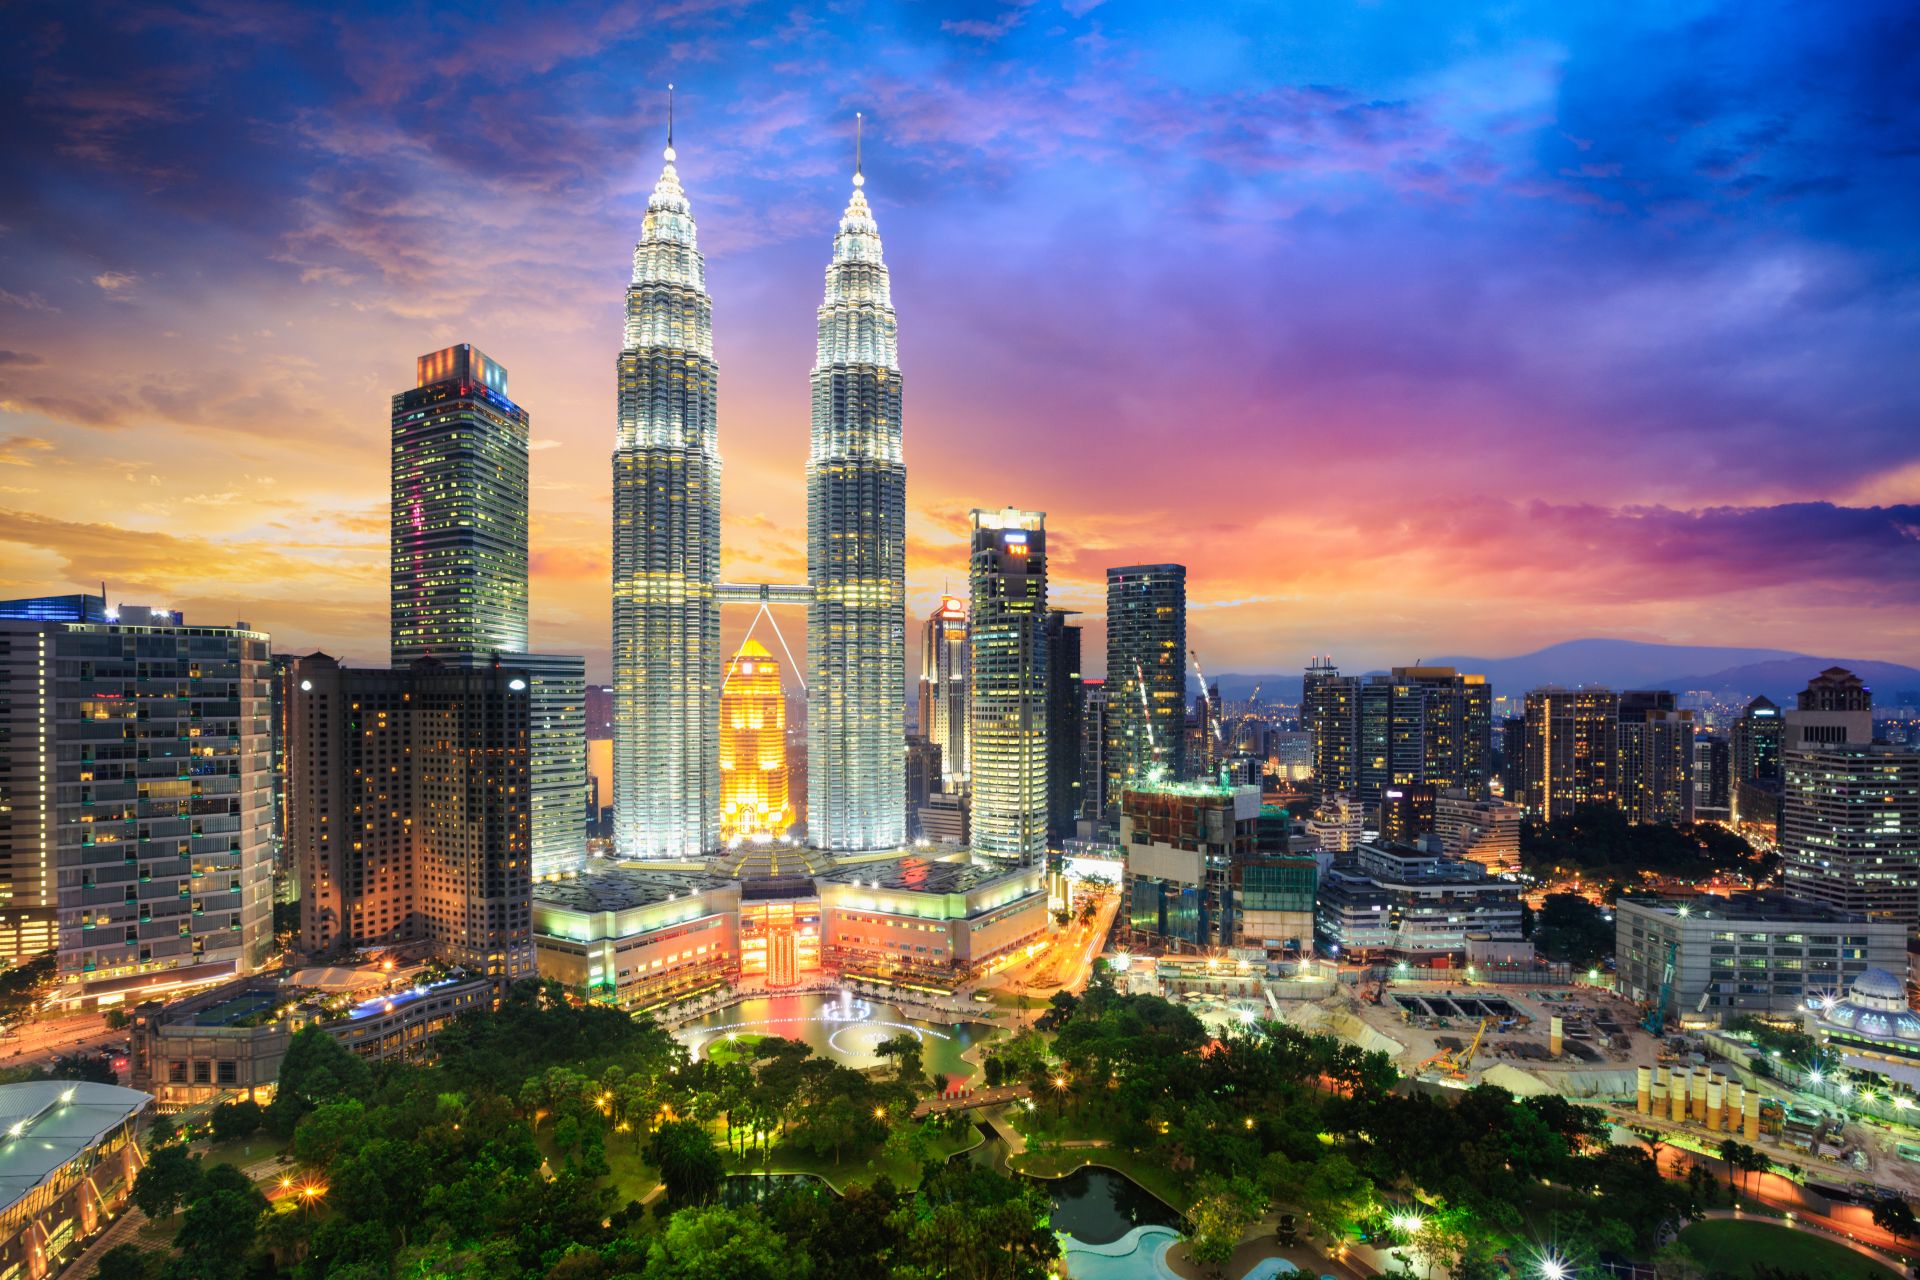 El horizonte de la ciudad de Kuala Lumpur al atardecer